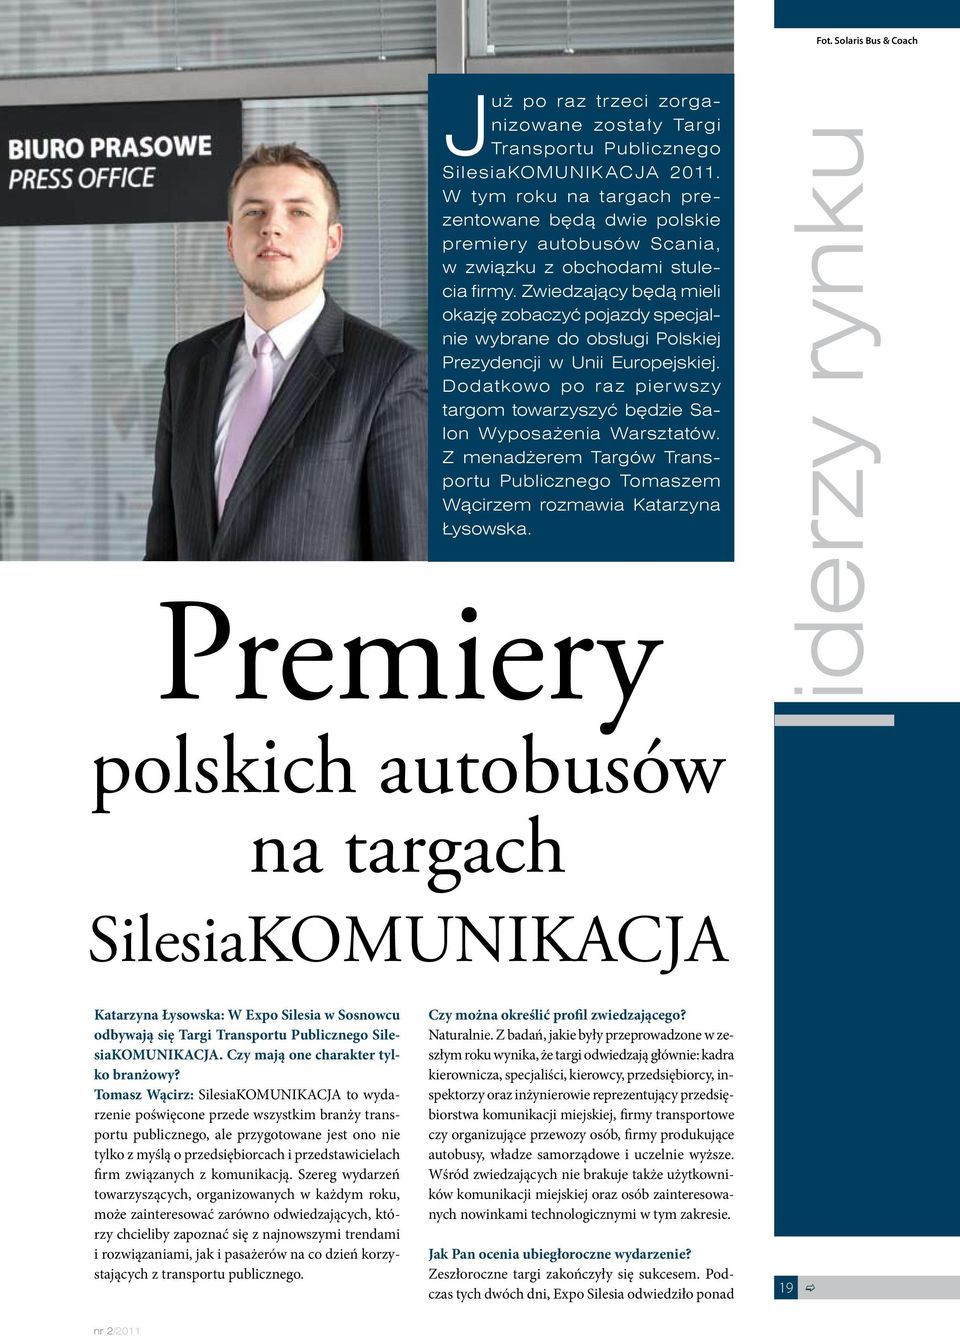 Zwiedzający będą mieli okazję zobaczyć pojazdy specjalnie wybrane do obsługi Polskiej Prezydencji w Unii Europejskiej. Dodatkowo po raz pierwszy targom towarzyszyć będzie Salon Wyposażenia Warsztatów.